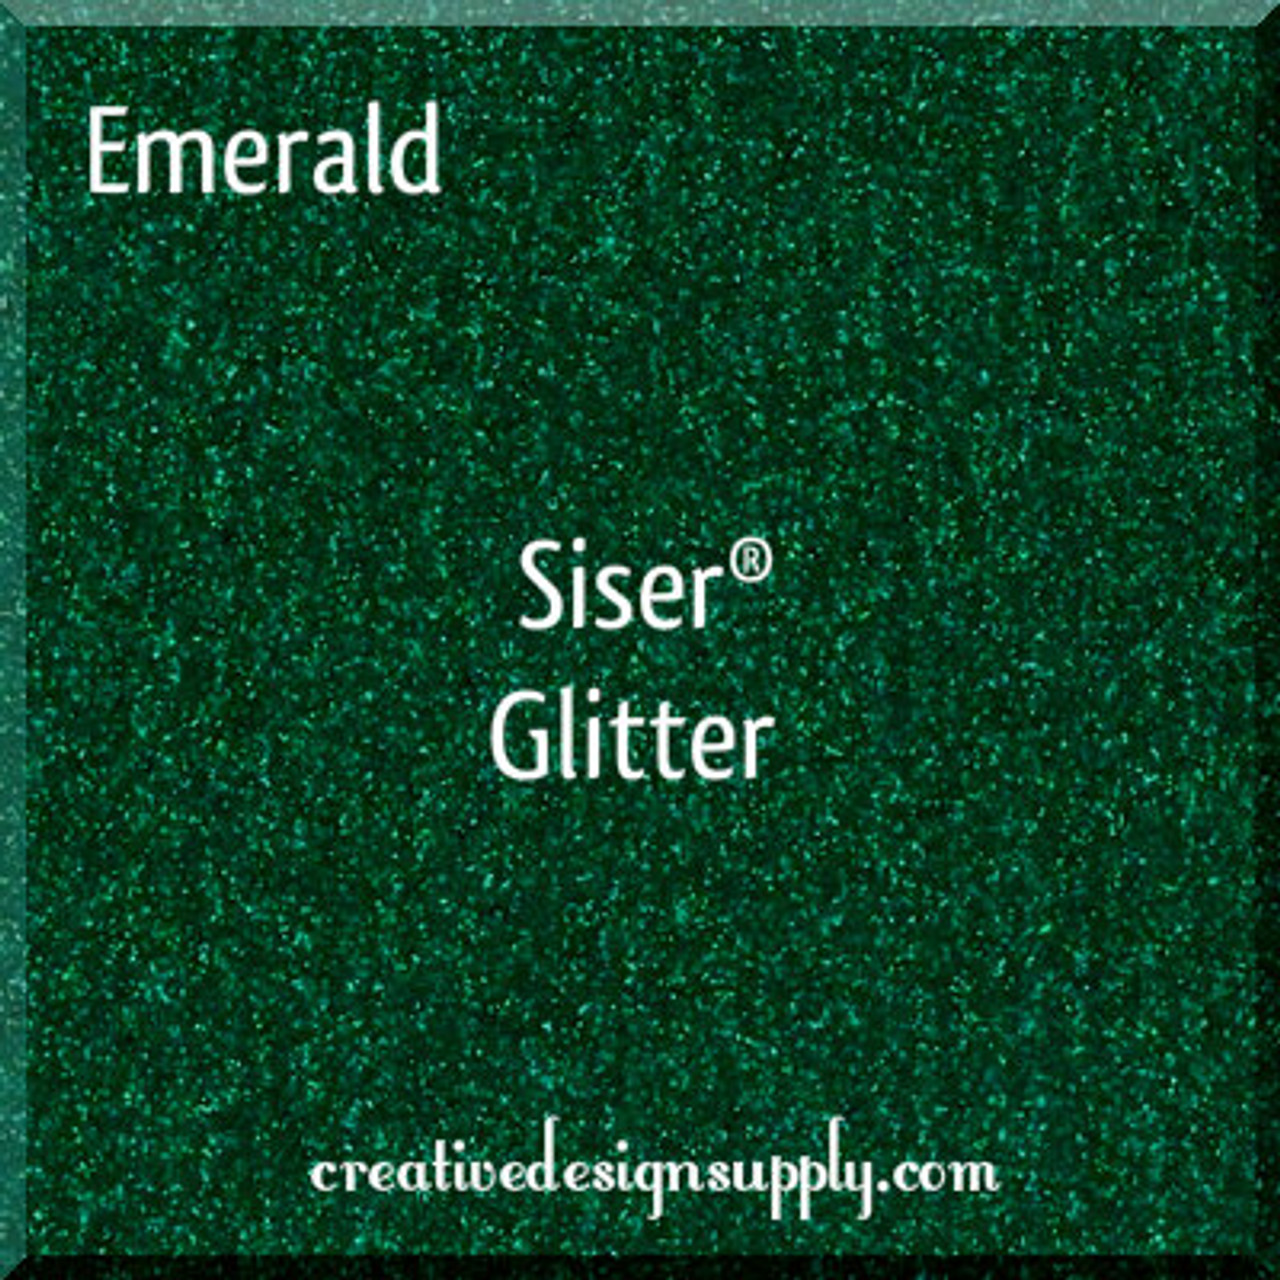 Emerald Siser Glitter 20"